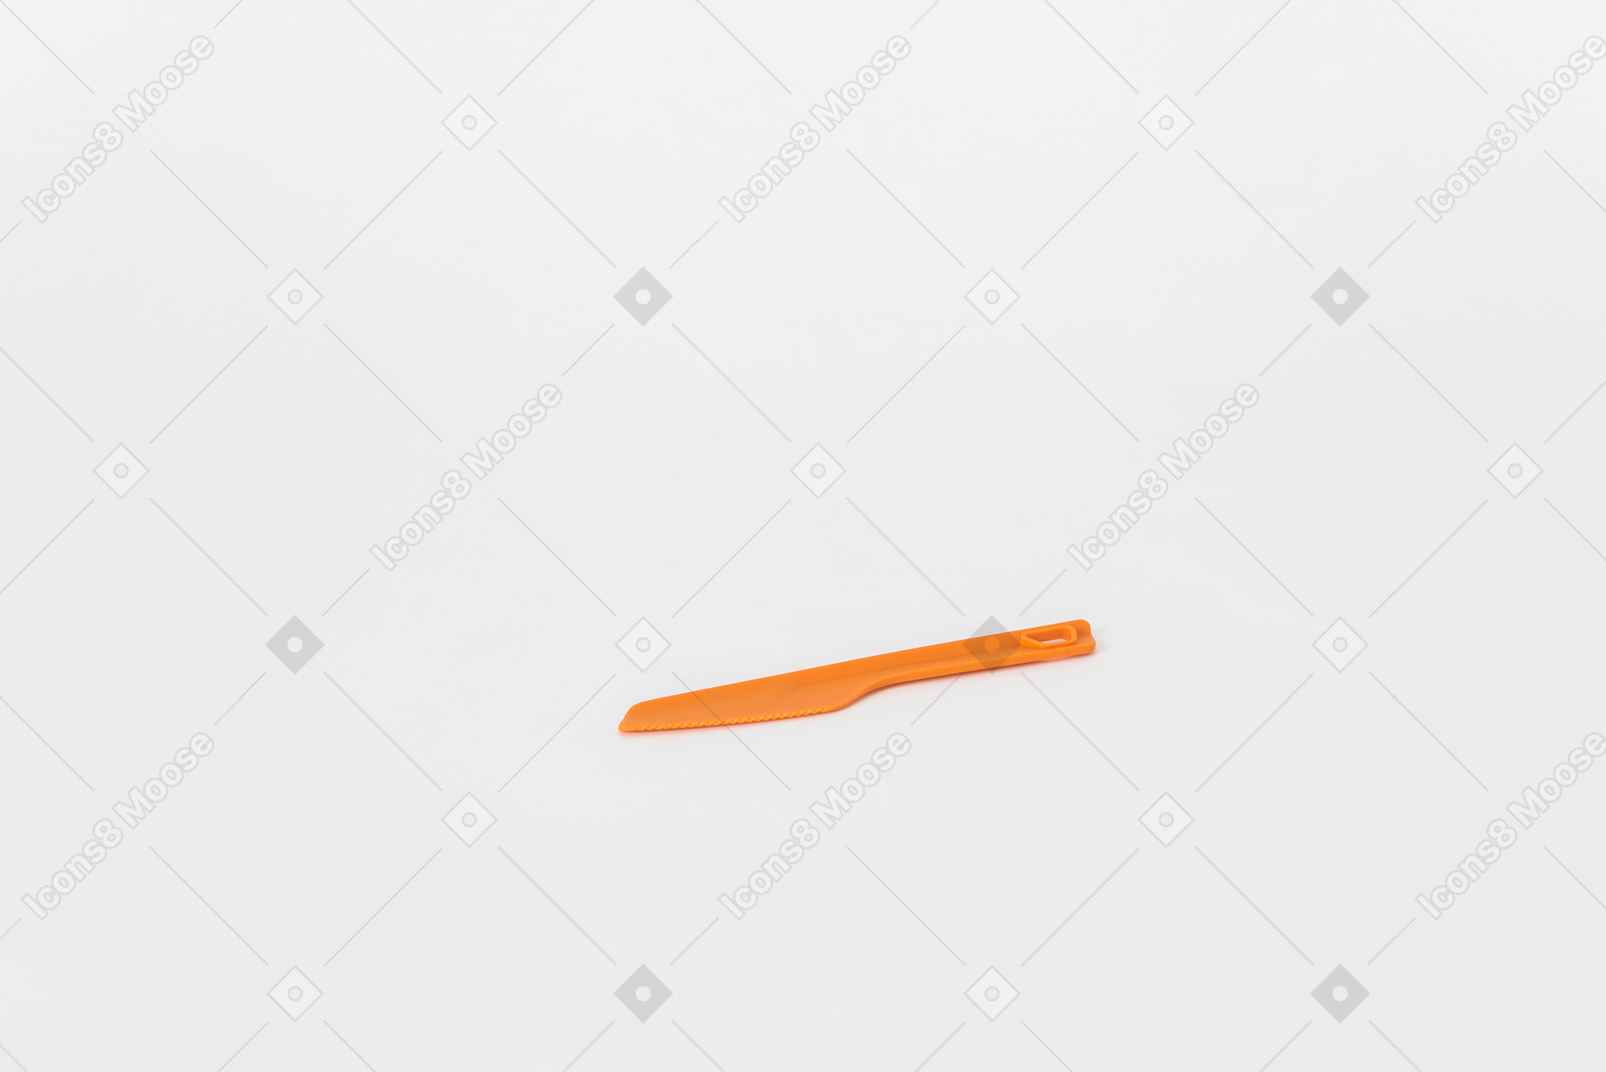 Plastikorange küchenmesser auf einem weißen hintergrund